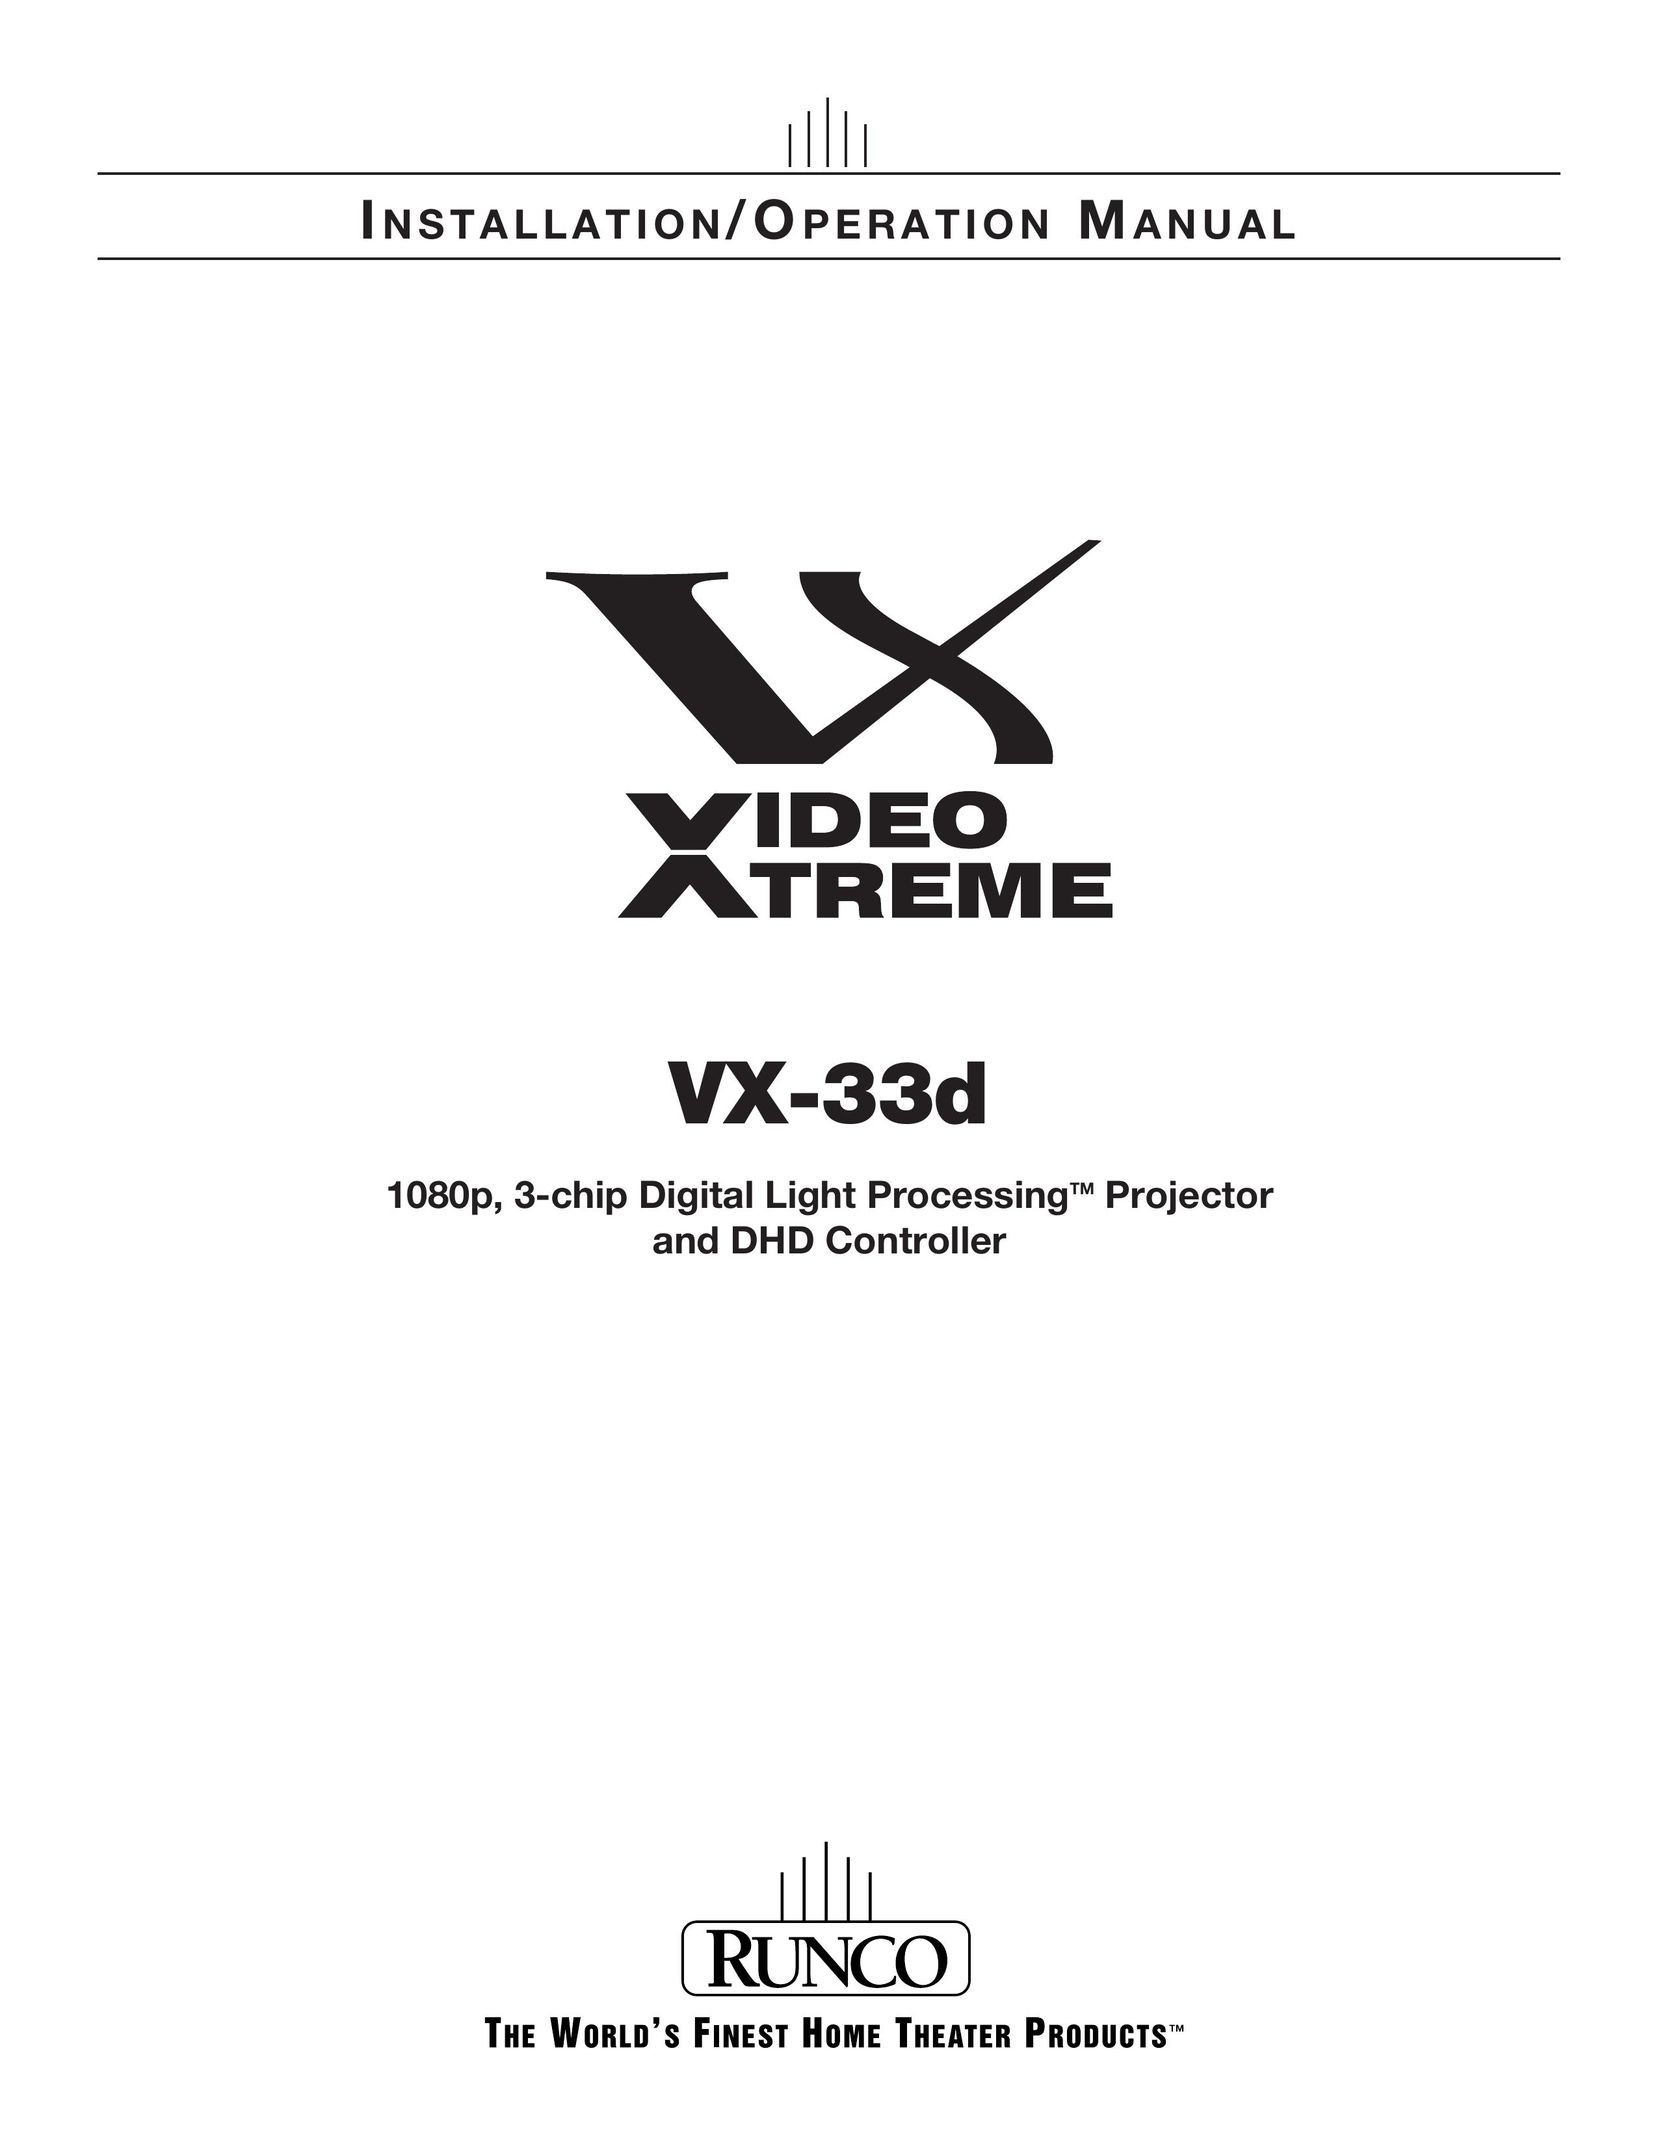 Runco VX-33D Projector User Manual